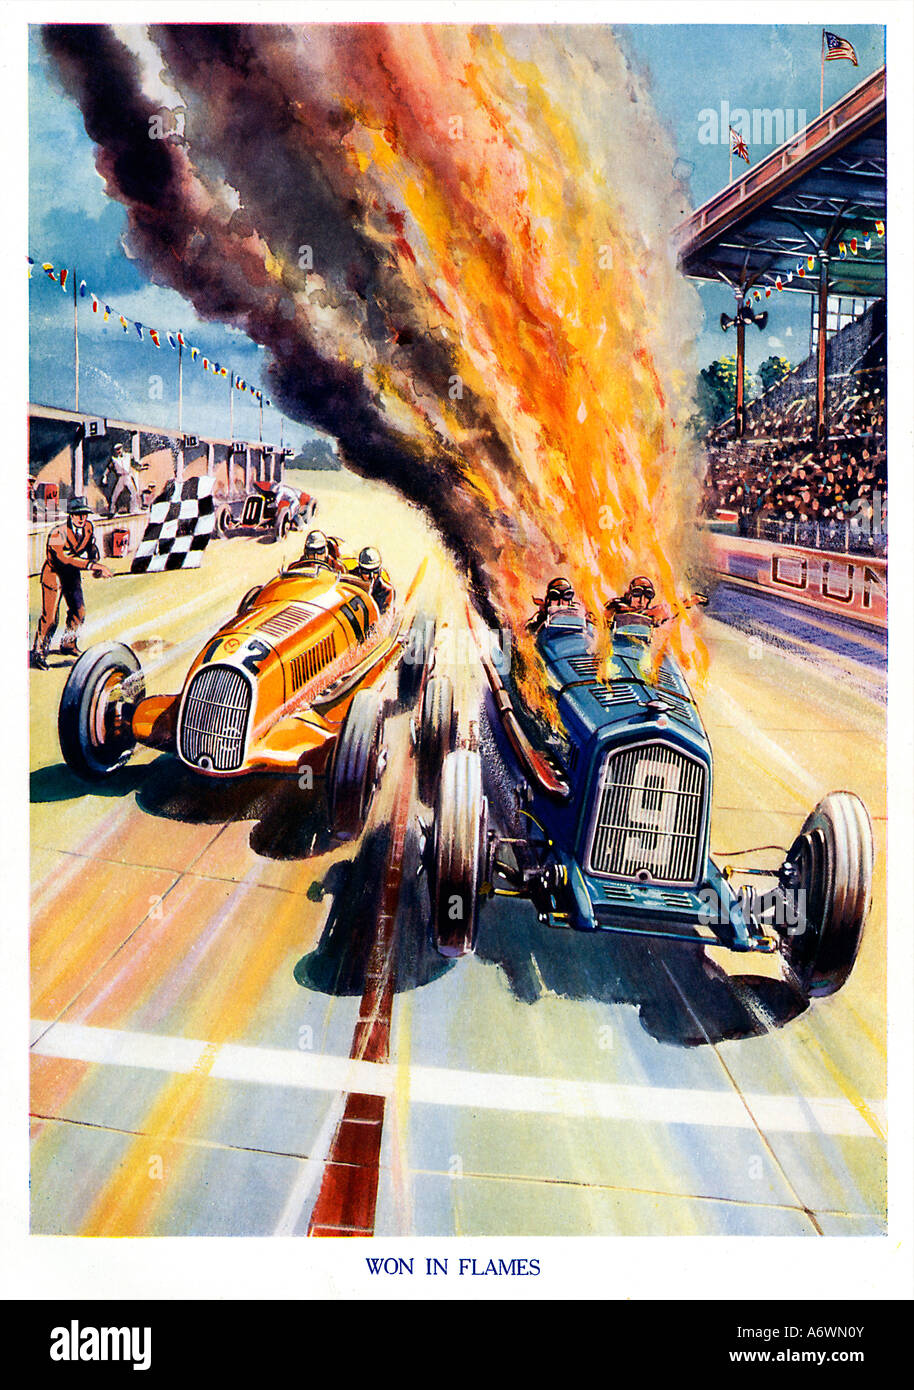 Ha vinto in fiamme 1930s illustrazione di una finitura di un Grand Prix come la masterizzazione di auto ancora prende la bandiera a scacchi Foto Stock